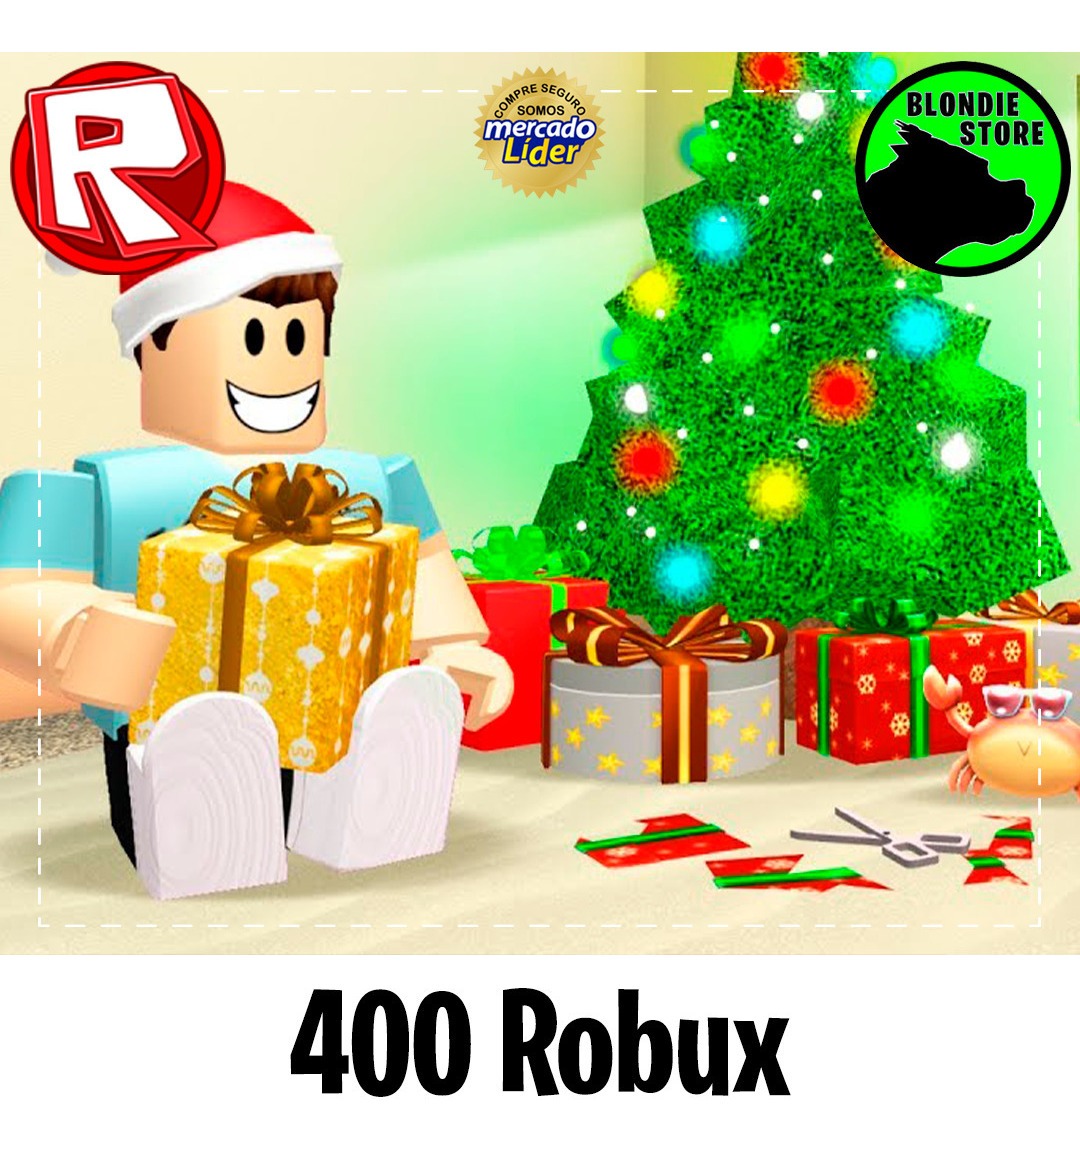 400 Robux Roblox At Todos Los Días On At Mercadolider - comprar dinero roblox en mercado libre argentina